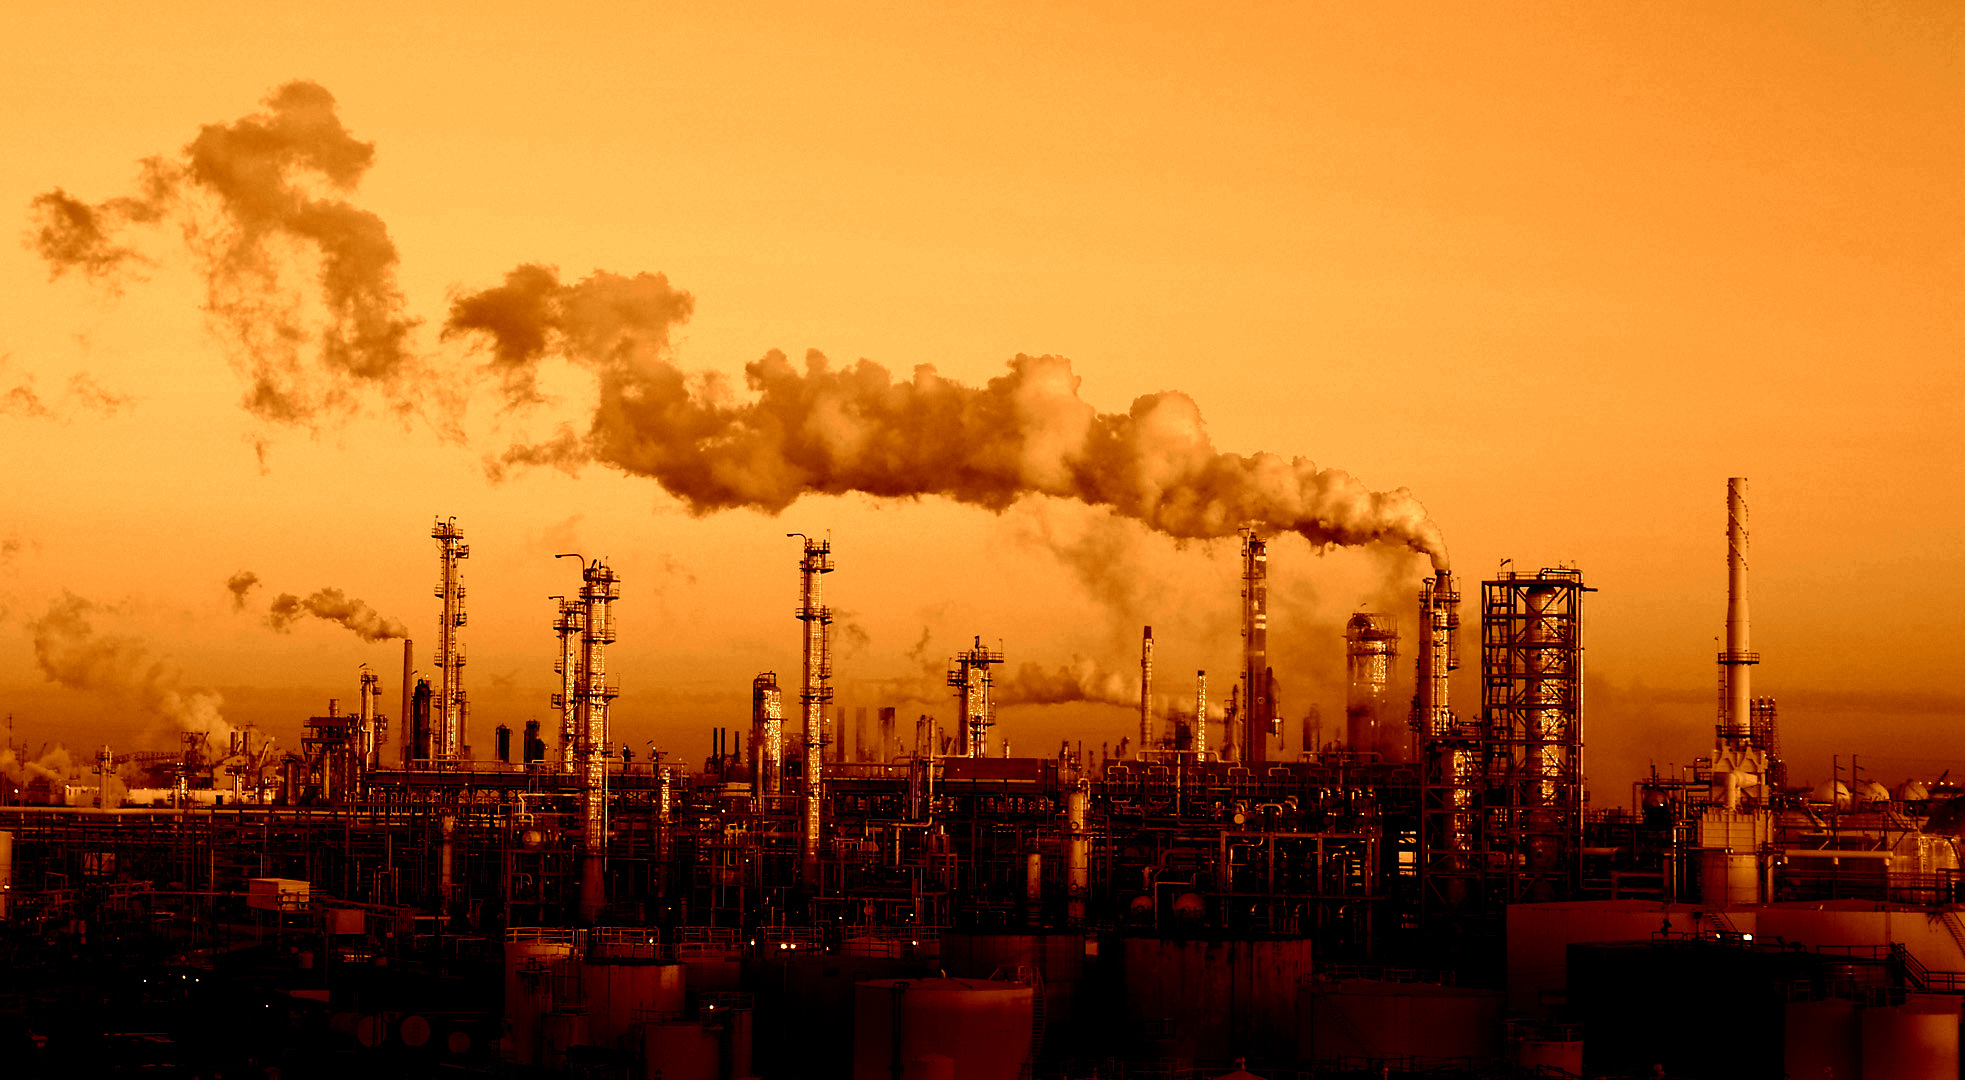 دانلود تصویر تاسف بار آلوده شدن هوا توسط کارخانه ها